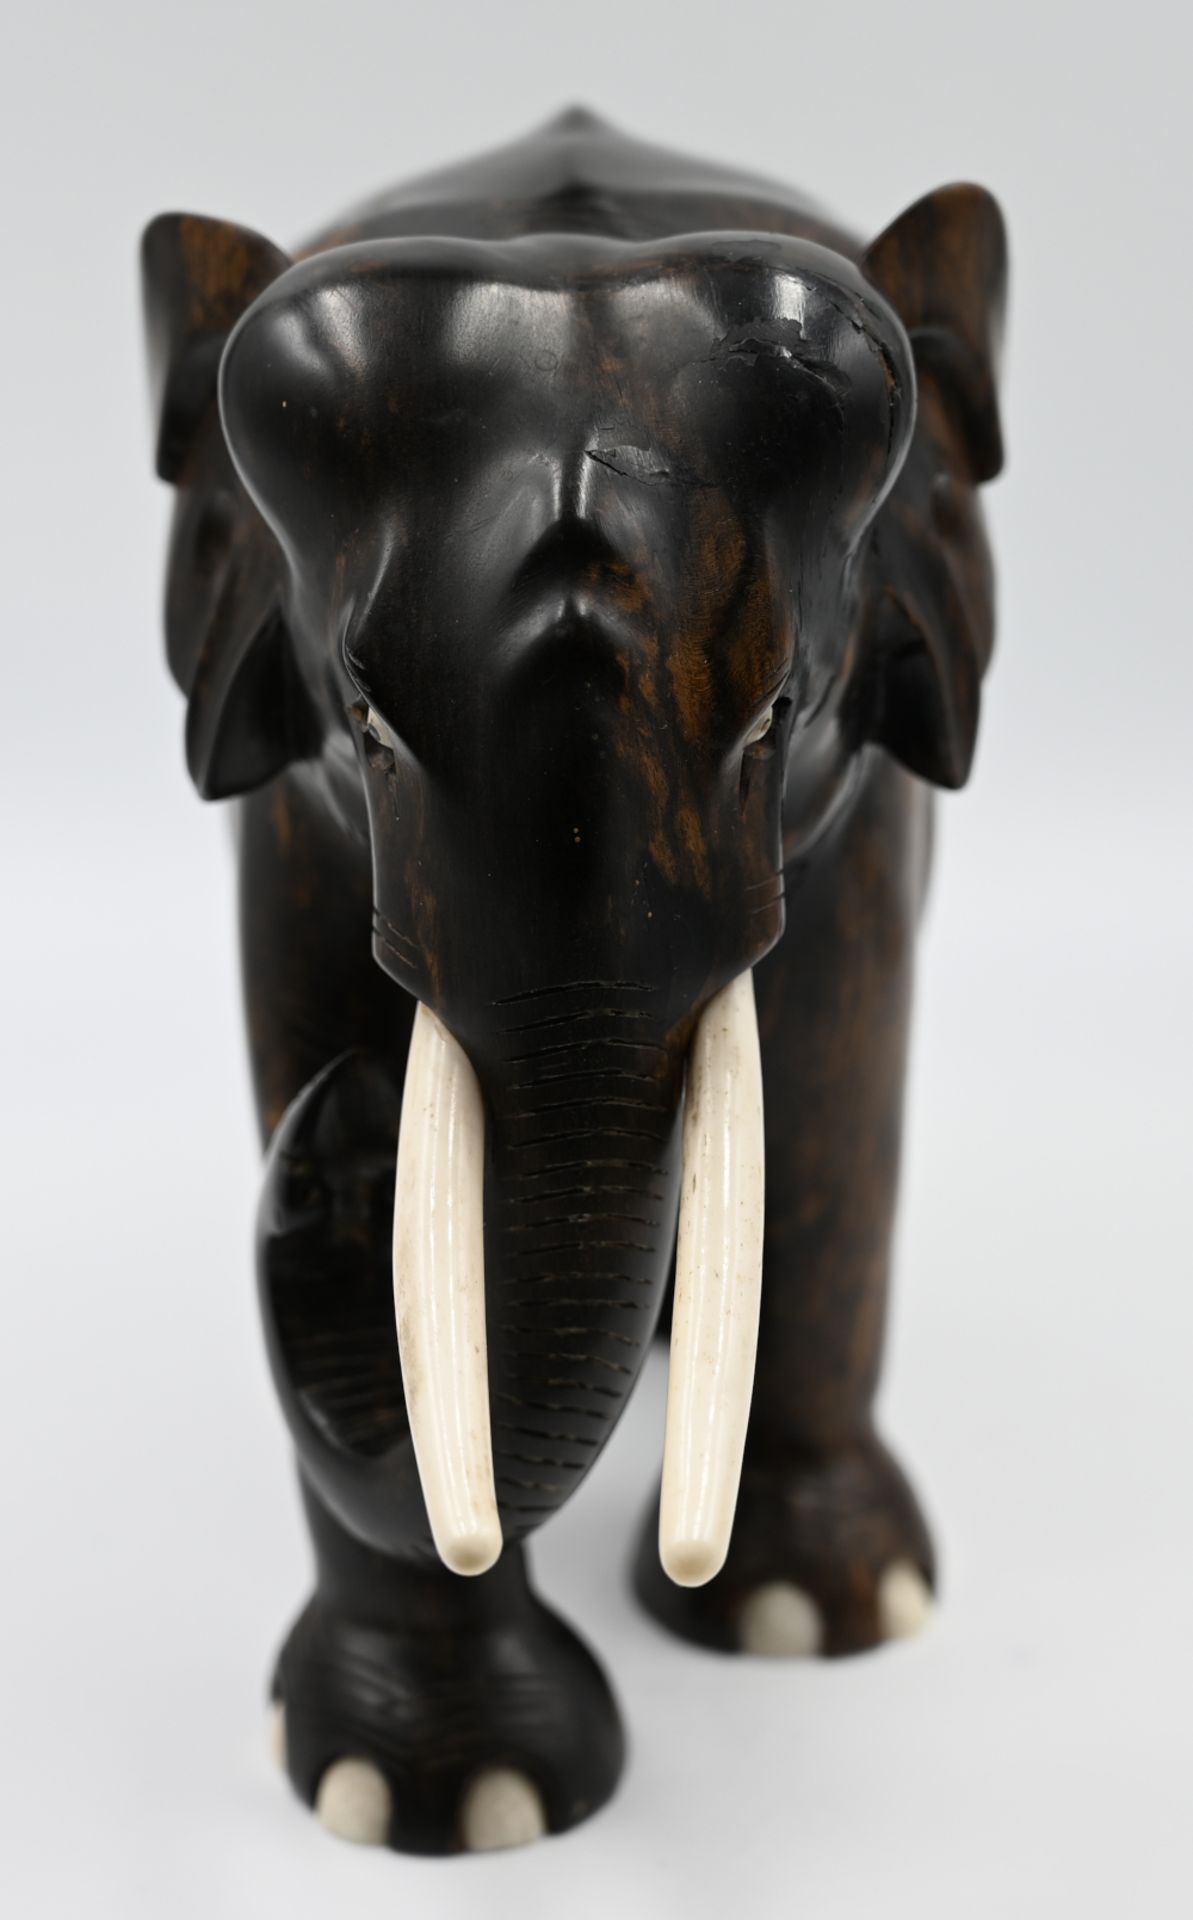 1 Holzfigur mit Elfenbeineinlagen "Elefant" wohl 1920er bis 40er Jahre ca. H 18cm, min. besch., je A - Image 2 of 5